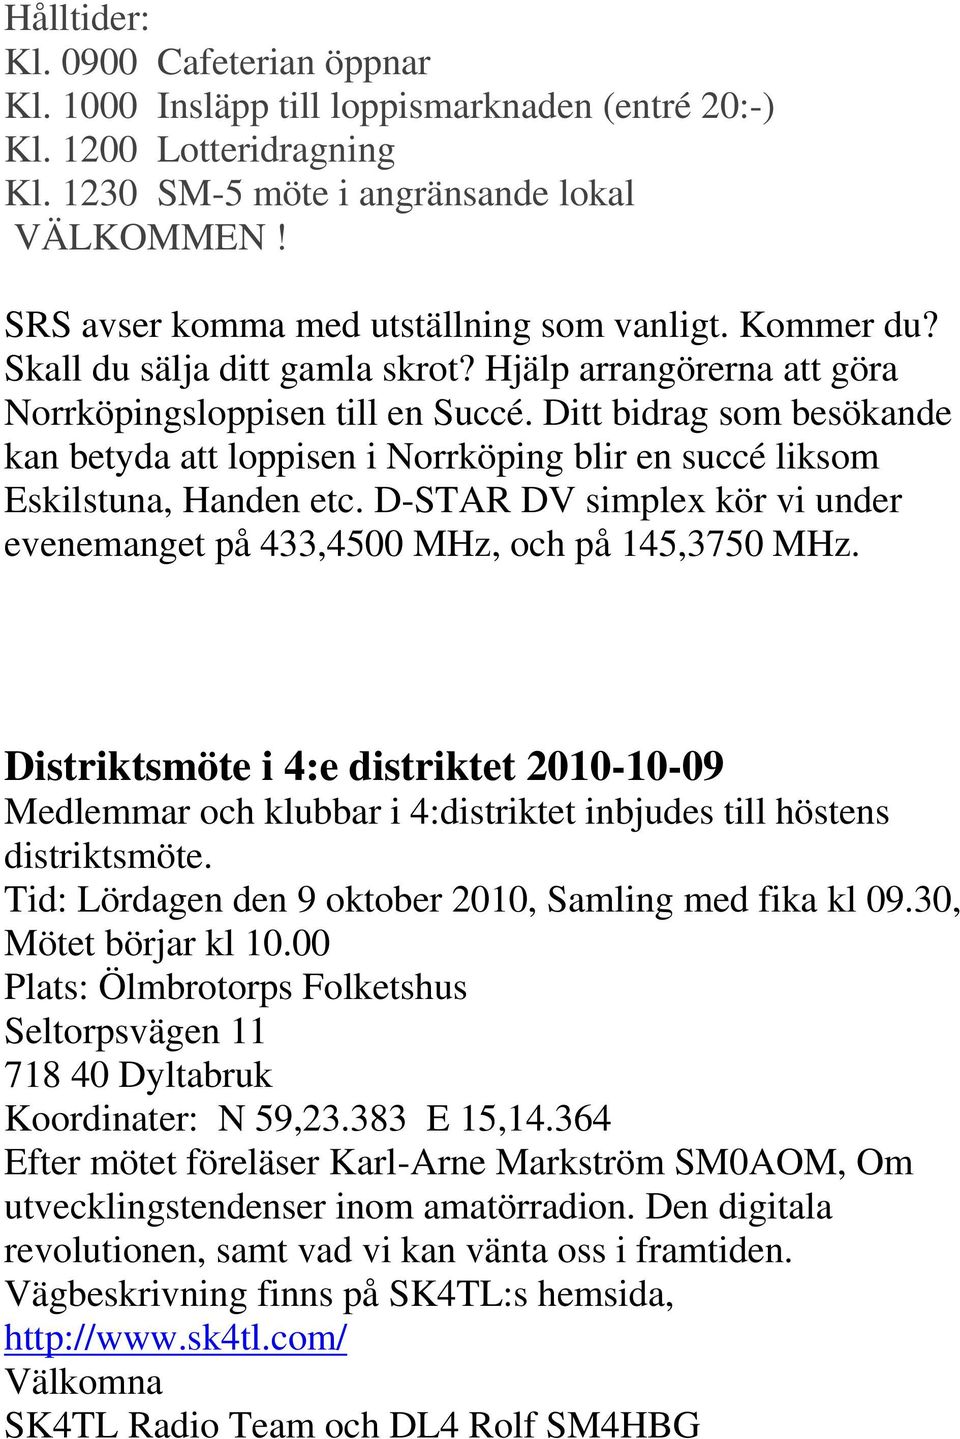 Ditt bidrag som besökande kan betyda att loppisen i Norrköping blir en succé liksom Eskilstuna, Handen etc. D-STAR DV simplex kör vi under evenemanget på 433,4500 MHz, och på 145,3750 MHz.